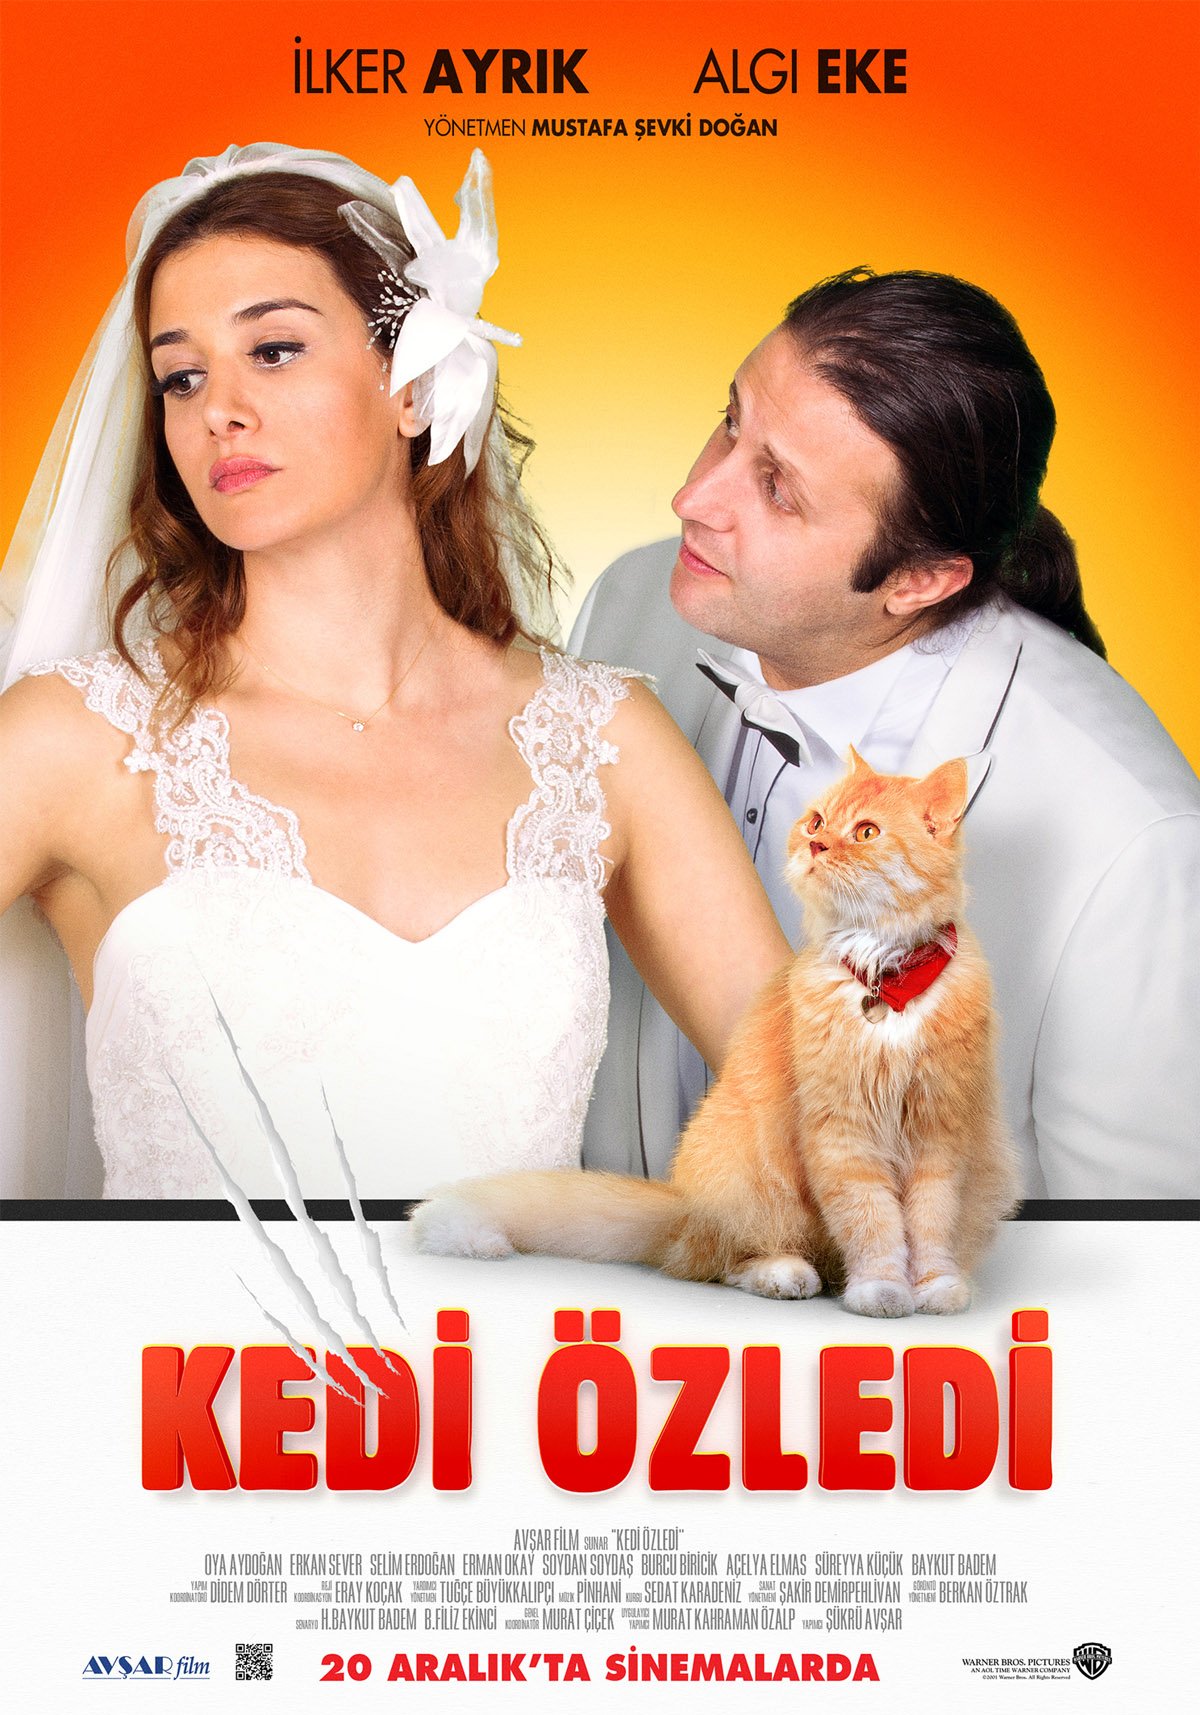 Kedi Ozledi Film 2013 Beyazperde Com